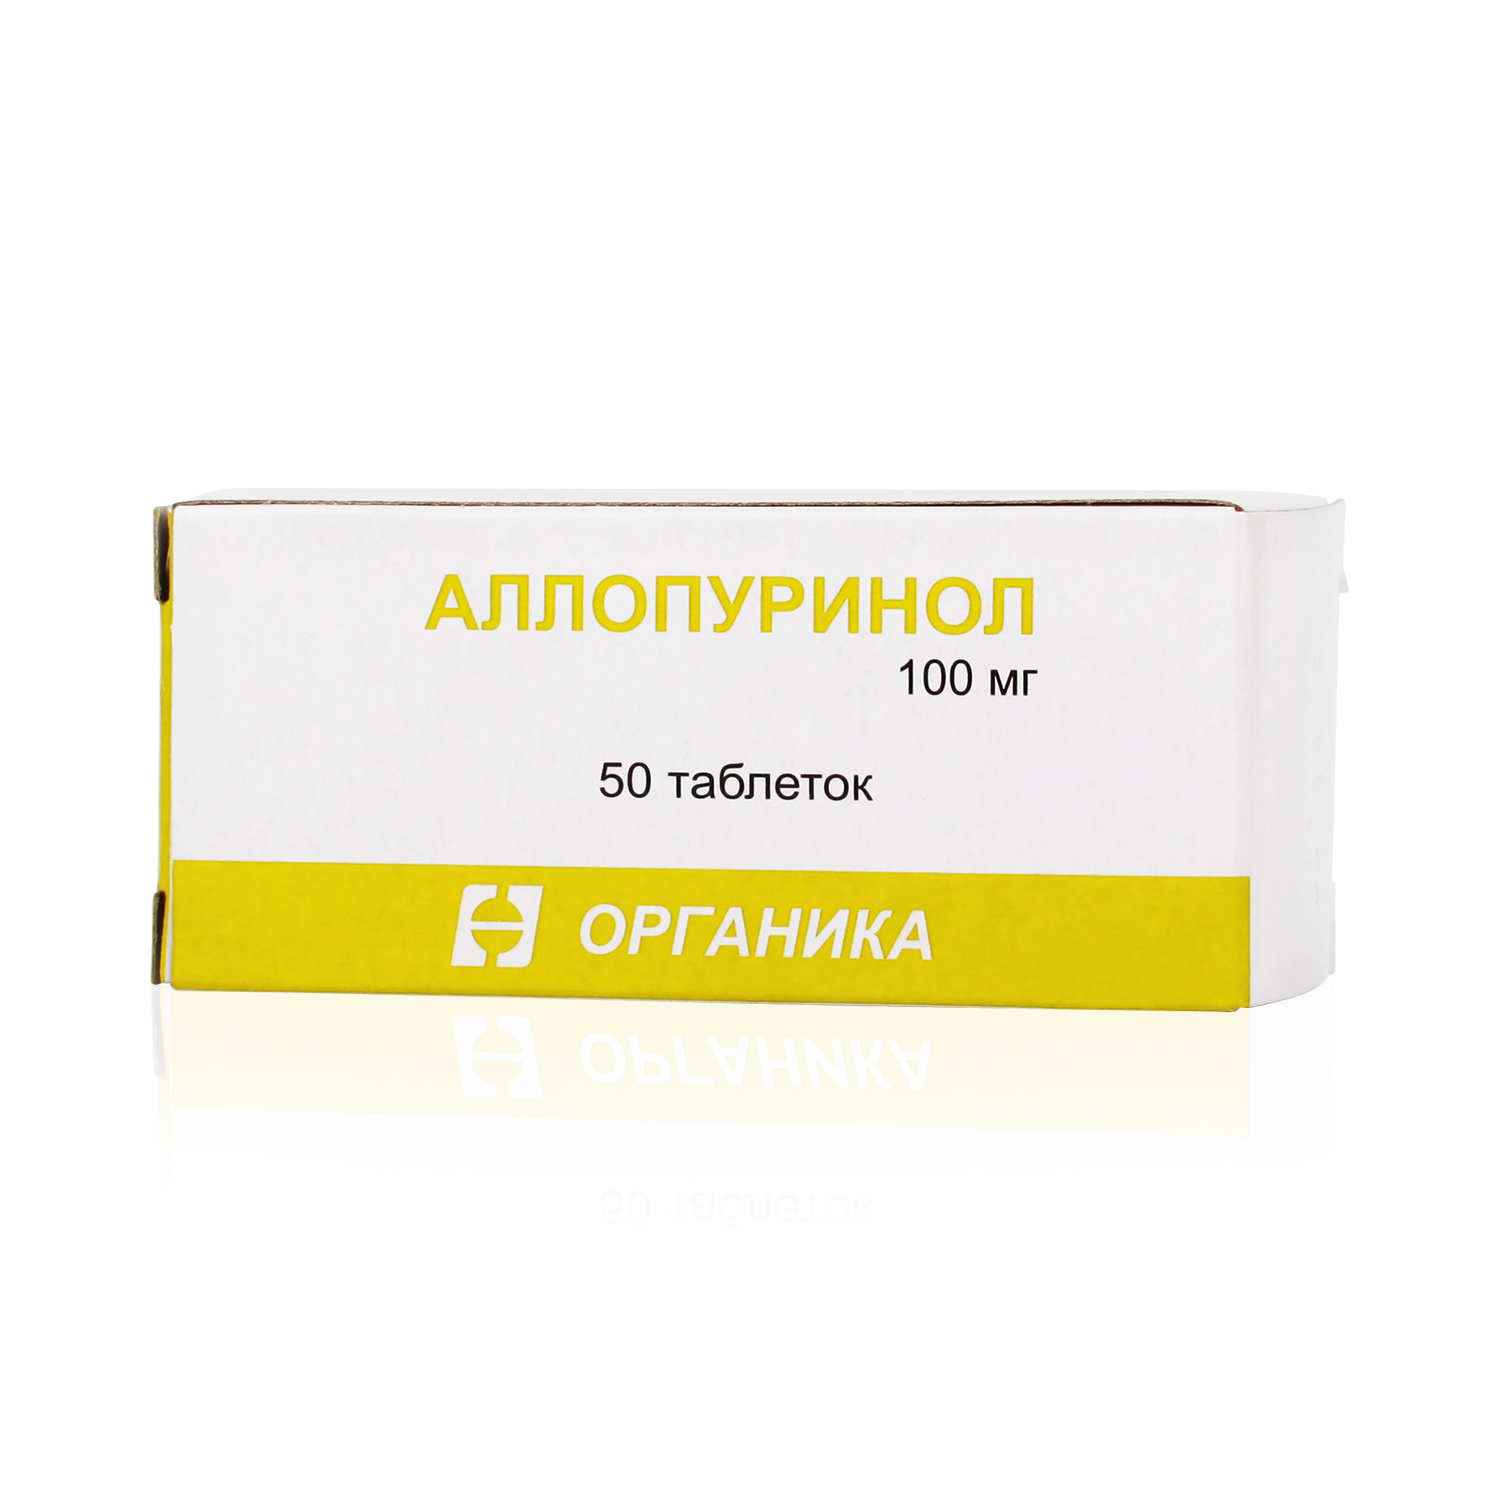 Аллопуринол 100 отзывы аналоги таблетки. Аллопуринол 300 мг. Аллопуринол 100 мг органика. Аллопуринол 100 миллиграмм. Аллопуринол 50мг.